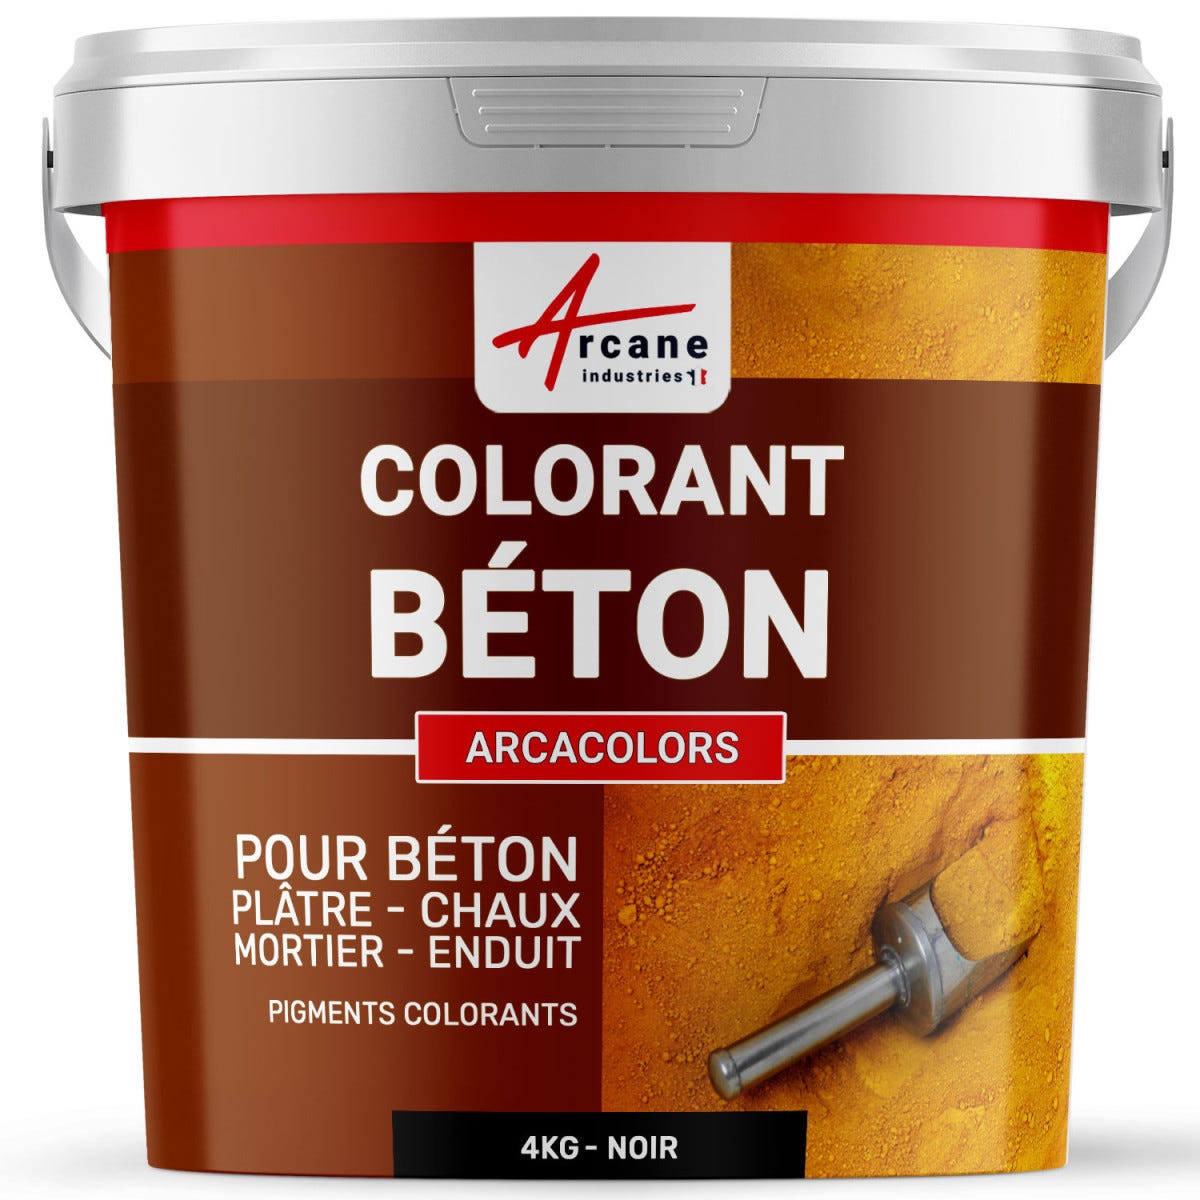 Pigments Colorants Premium pour enduit, béton, mortier, chaux, platre - ARCACOLORS - 4 kg - Noir - ARCANE INDUSTRIES 2